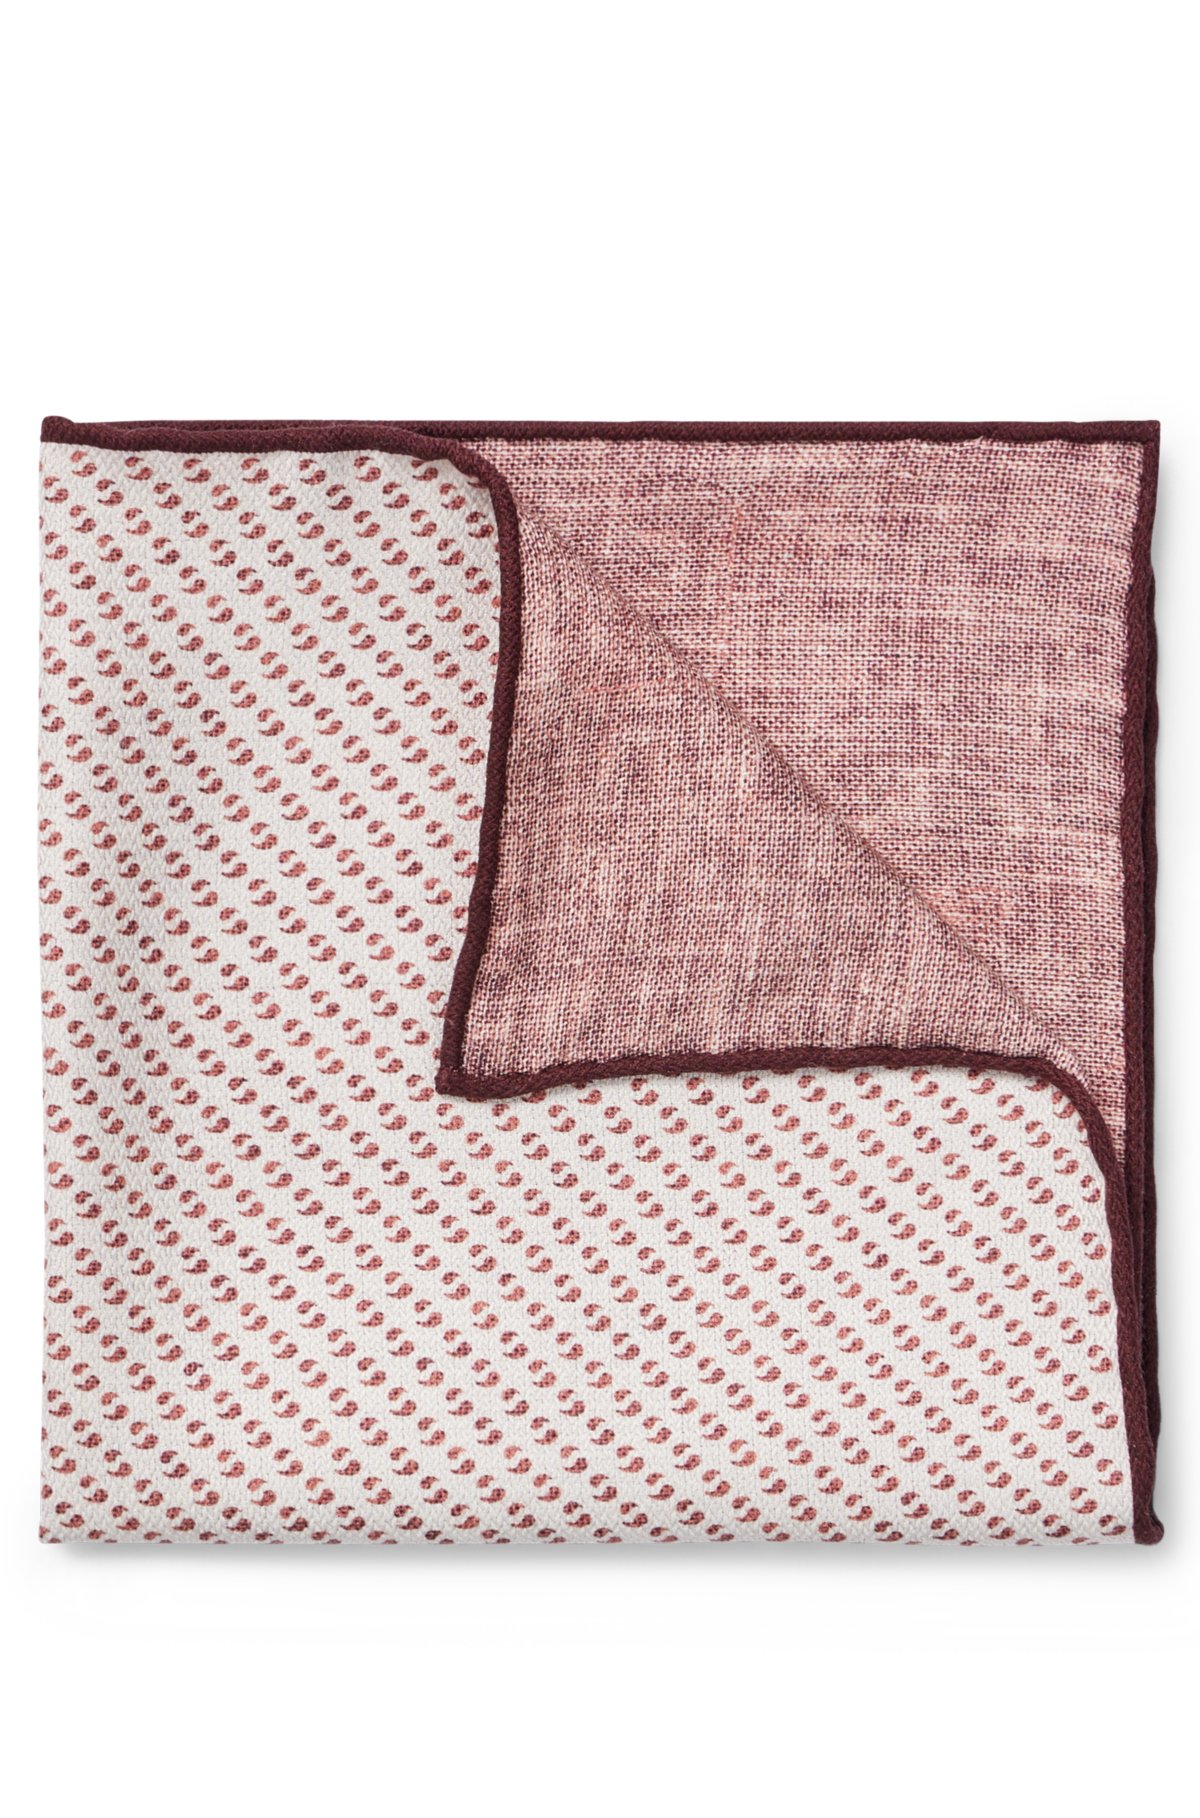 Authentic Louis Vuitton Bowtie + Pocket Square (1 Set) 100% New Red